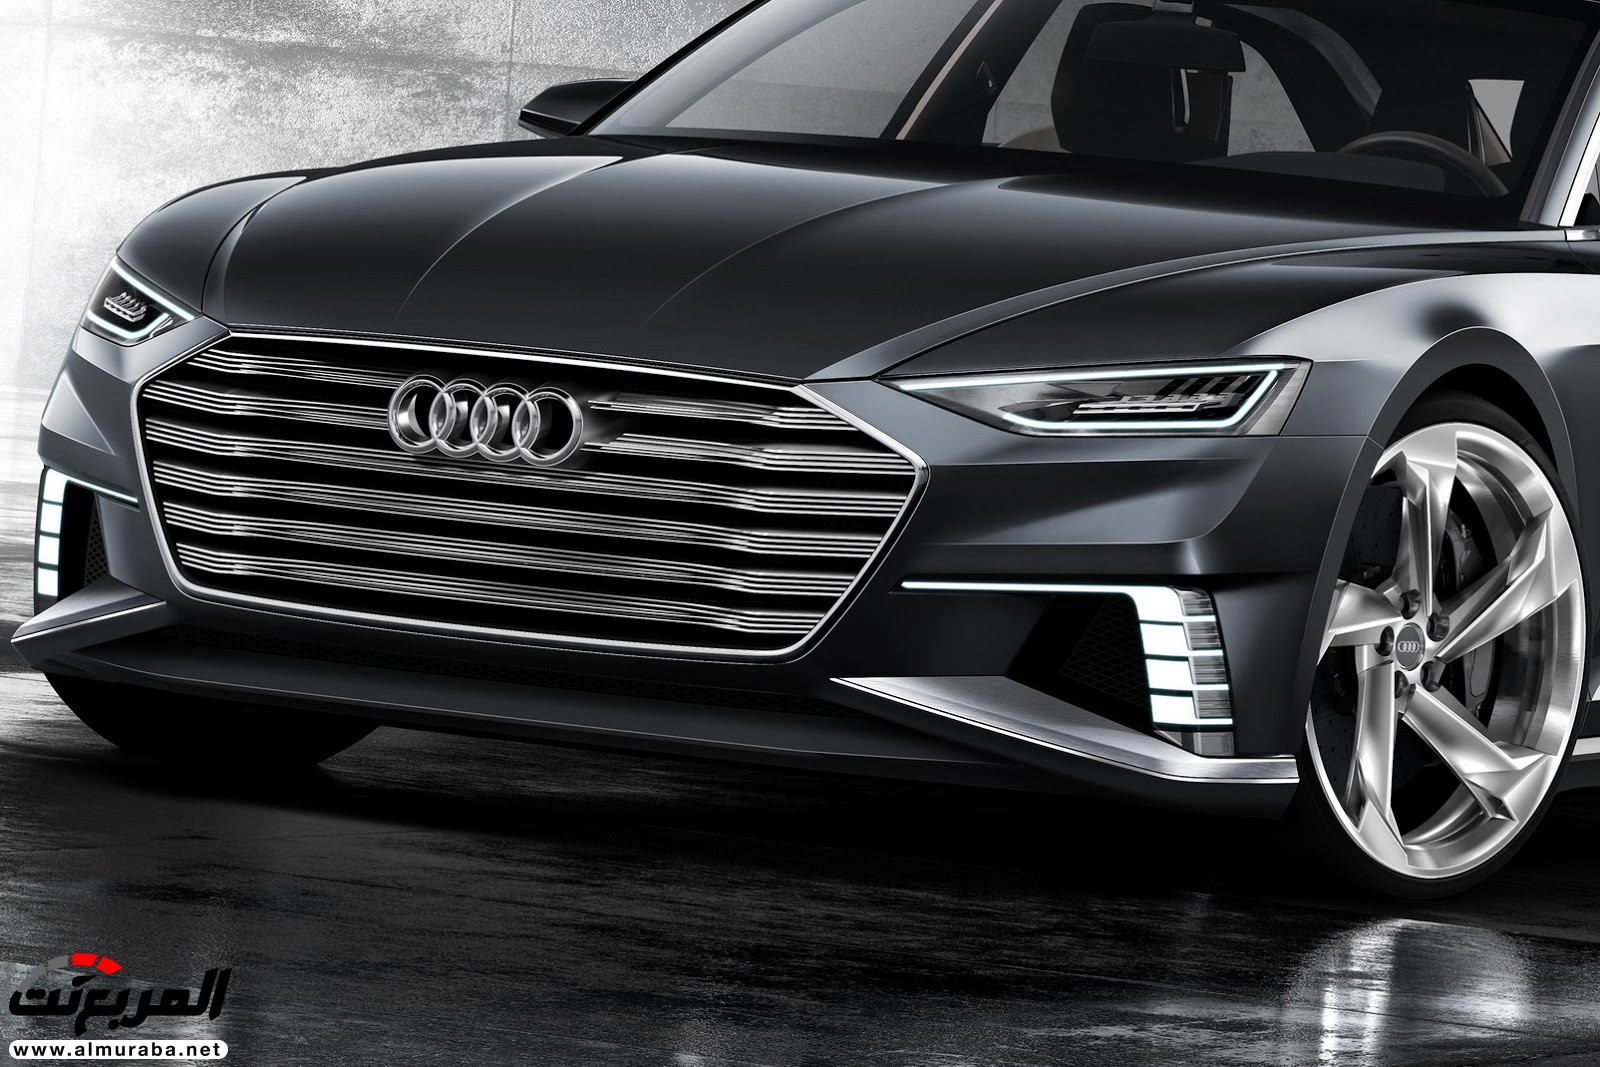 "أودي" A6 الجيل القادم 2019 سيتغير شكلها جذريا وسيتم تدشينها خلال العام المقبل Audi 18